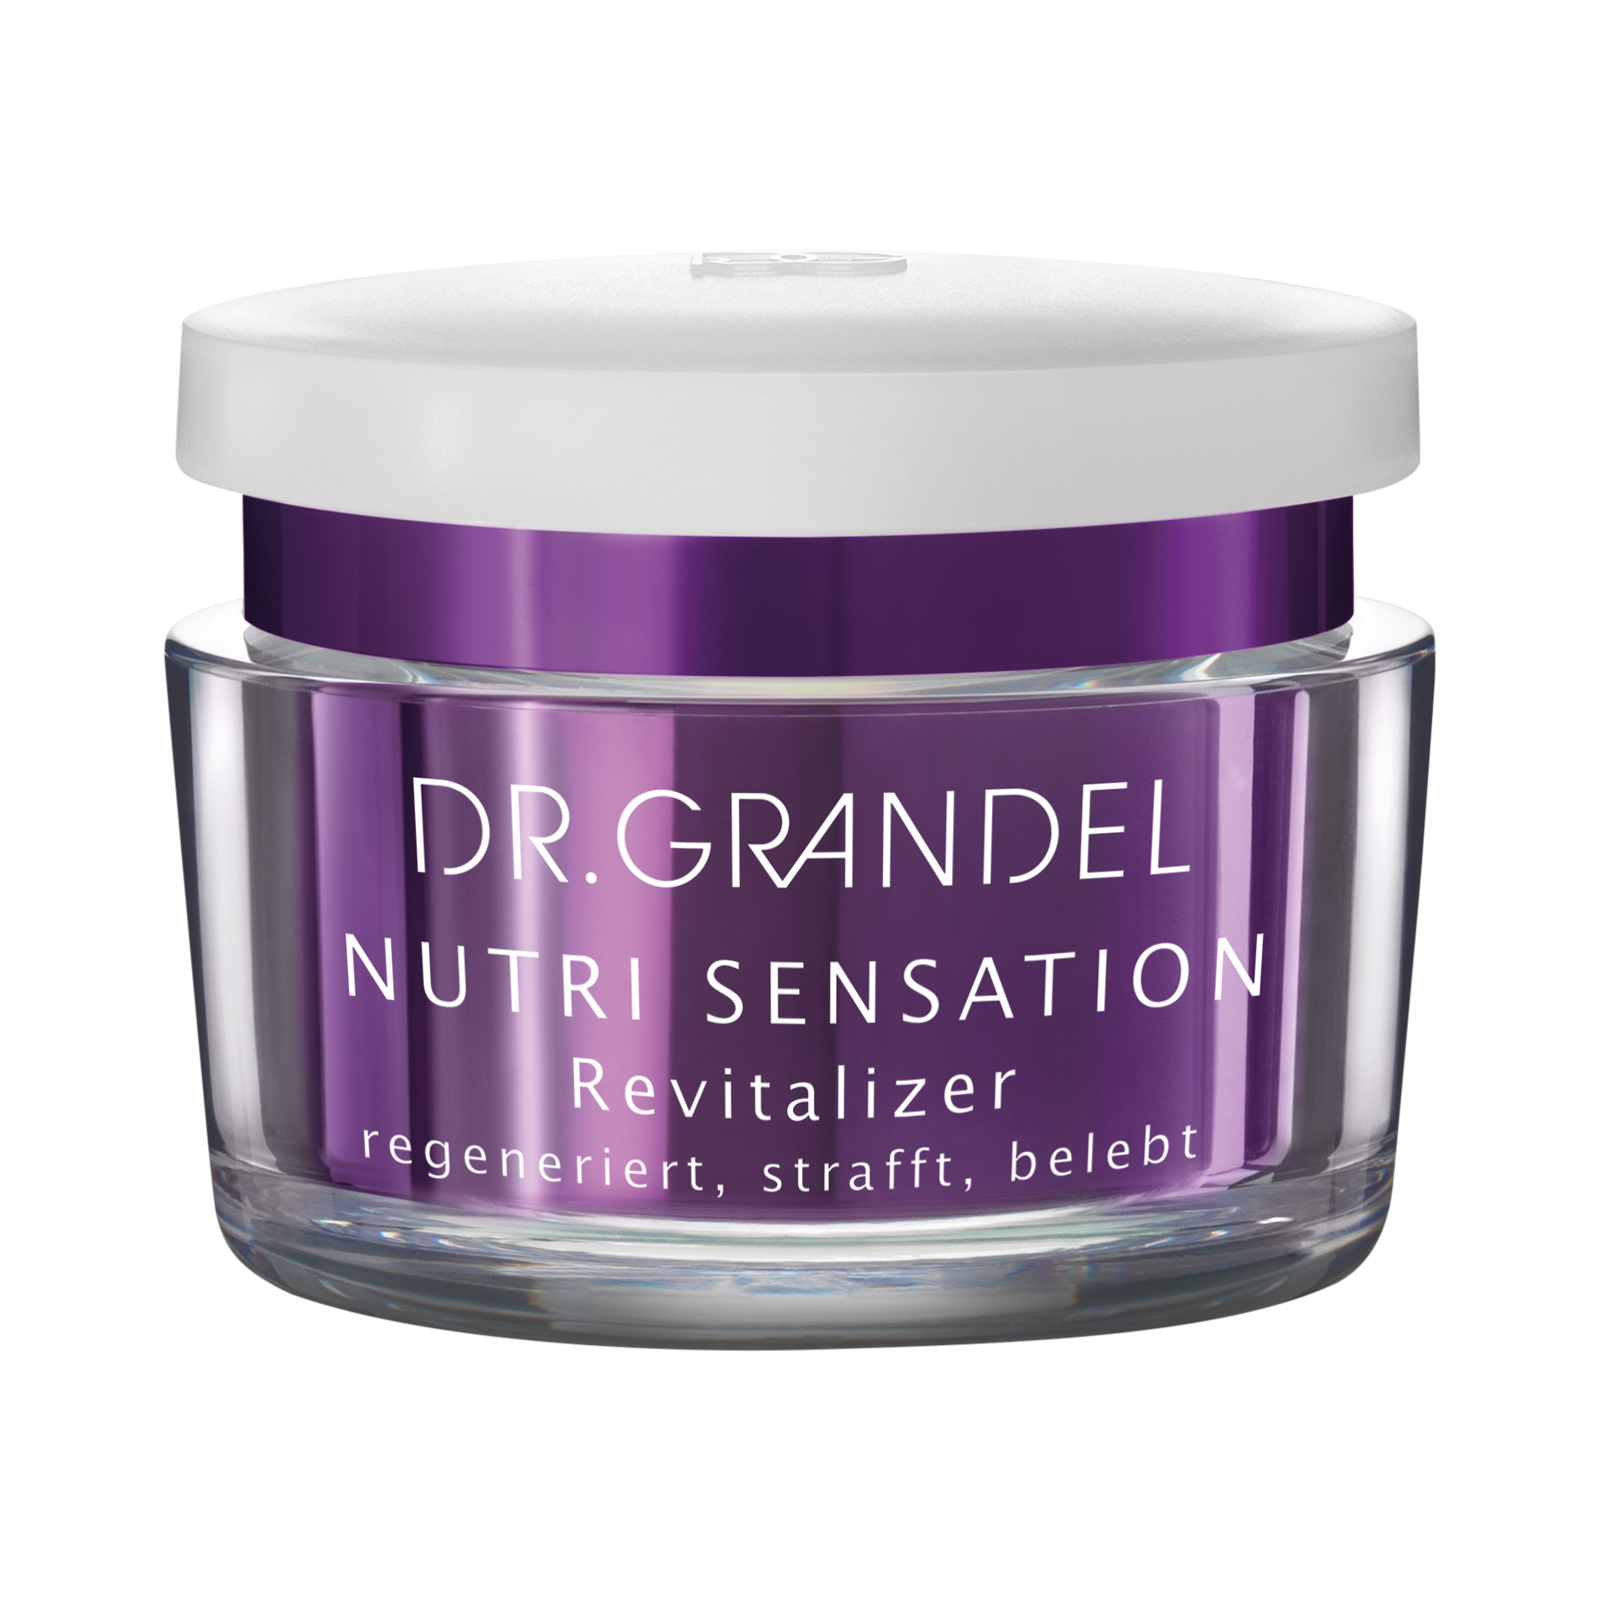 Dr. Grandel NUTRI SENSATION Revitalizer 50 ml